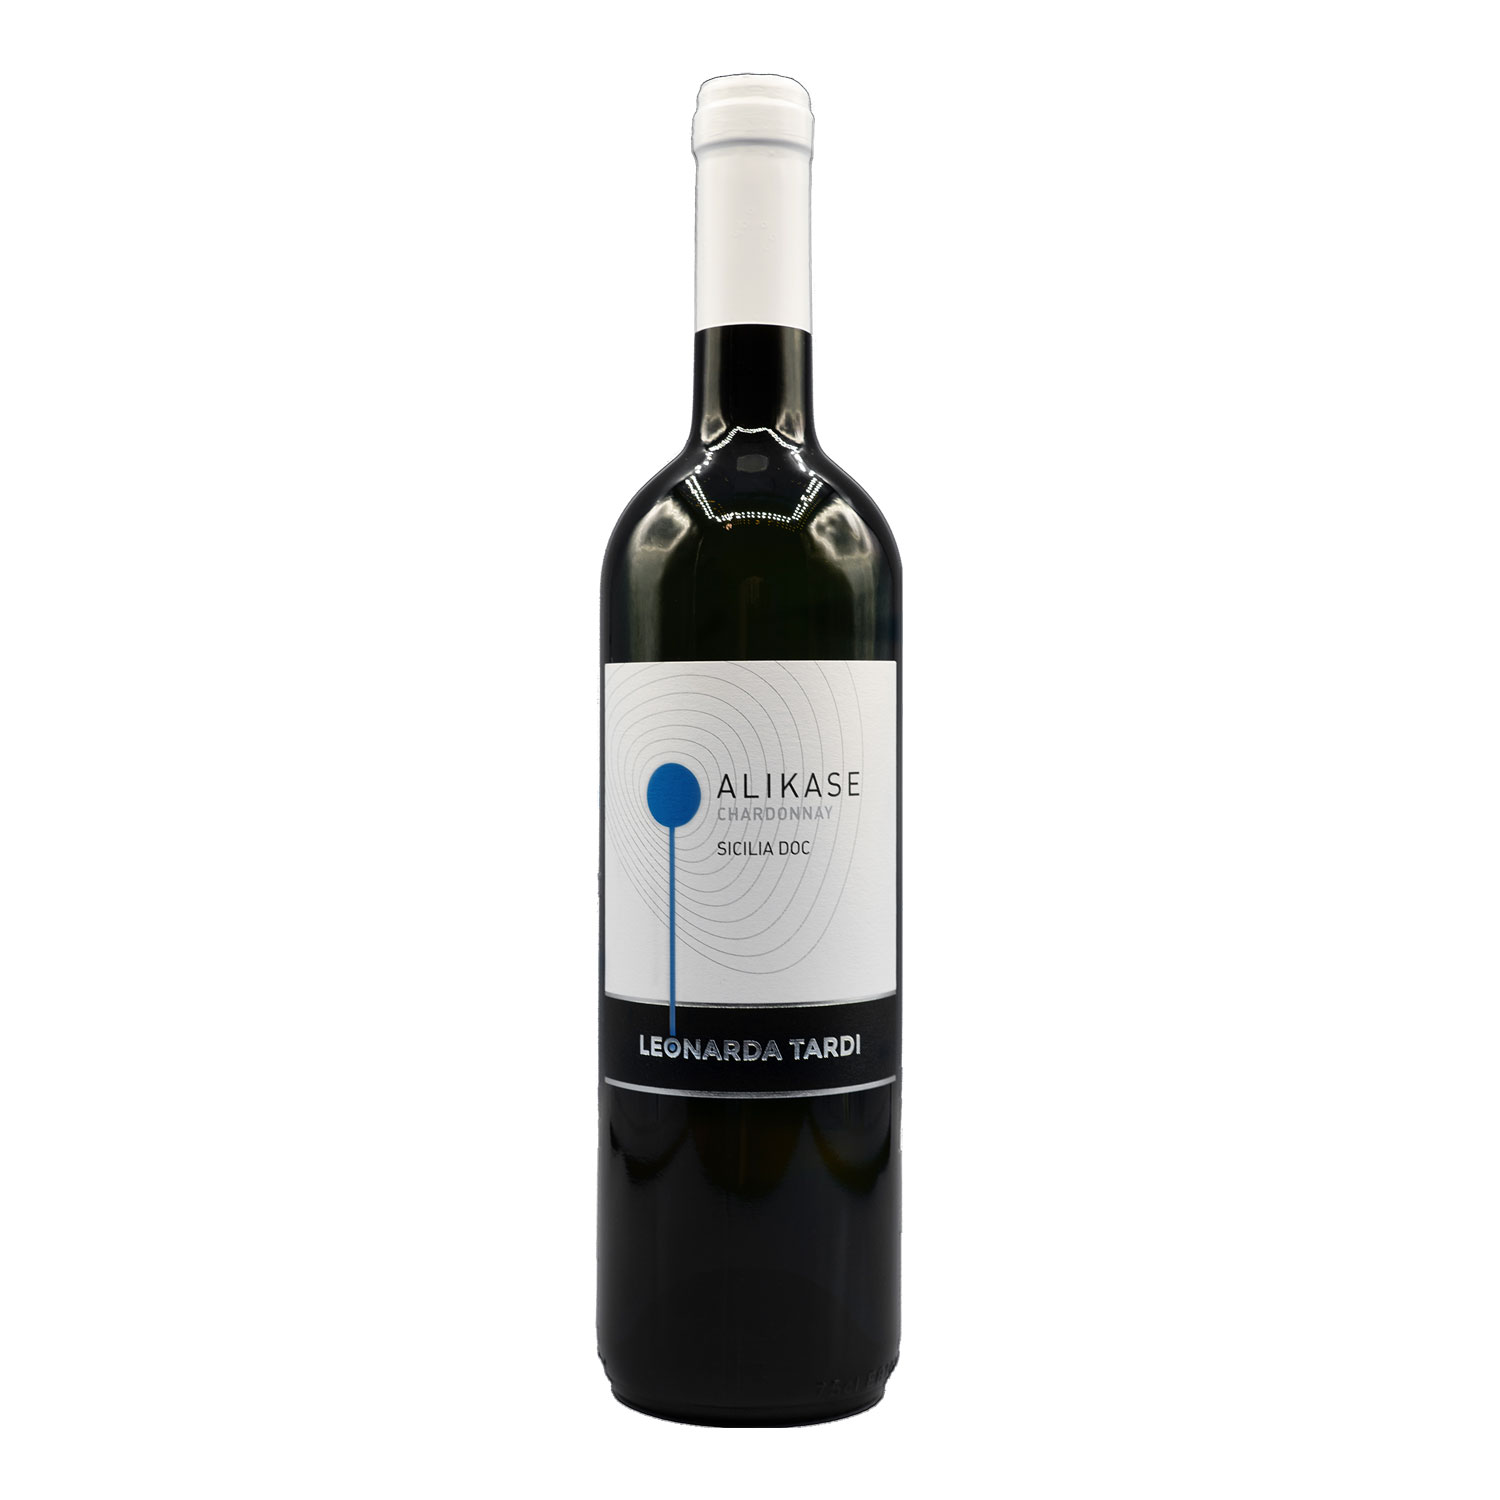 Chardonnay Sicilia DOC “Alikase” 2018 - Leonarda Tardi